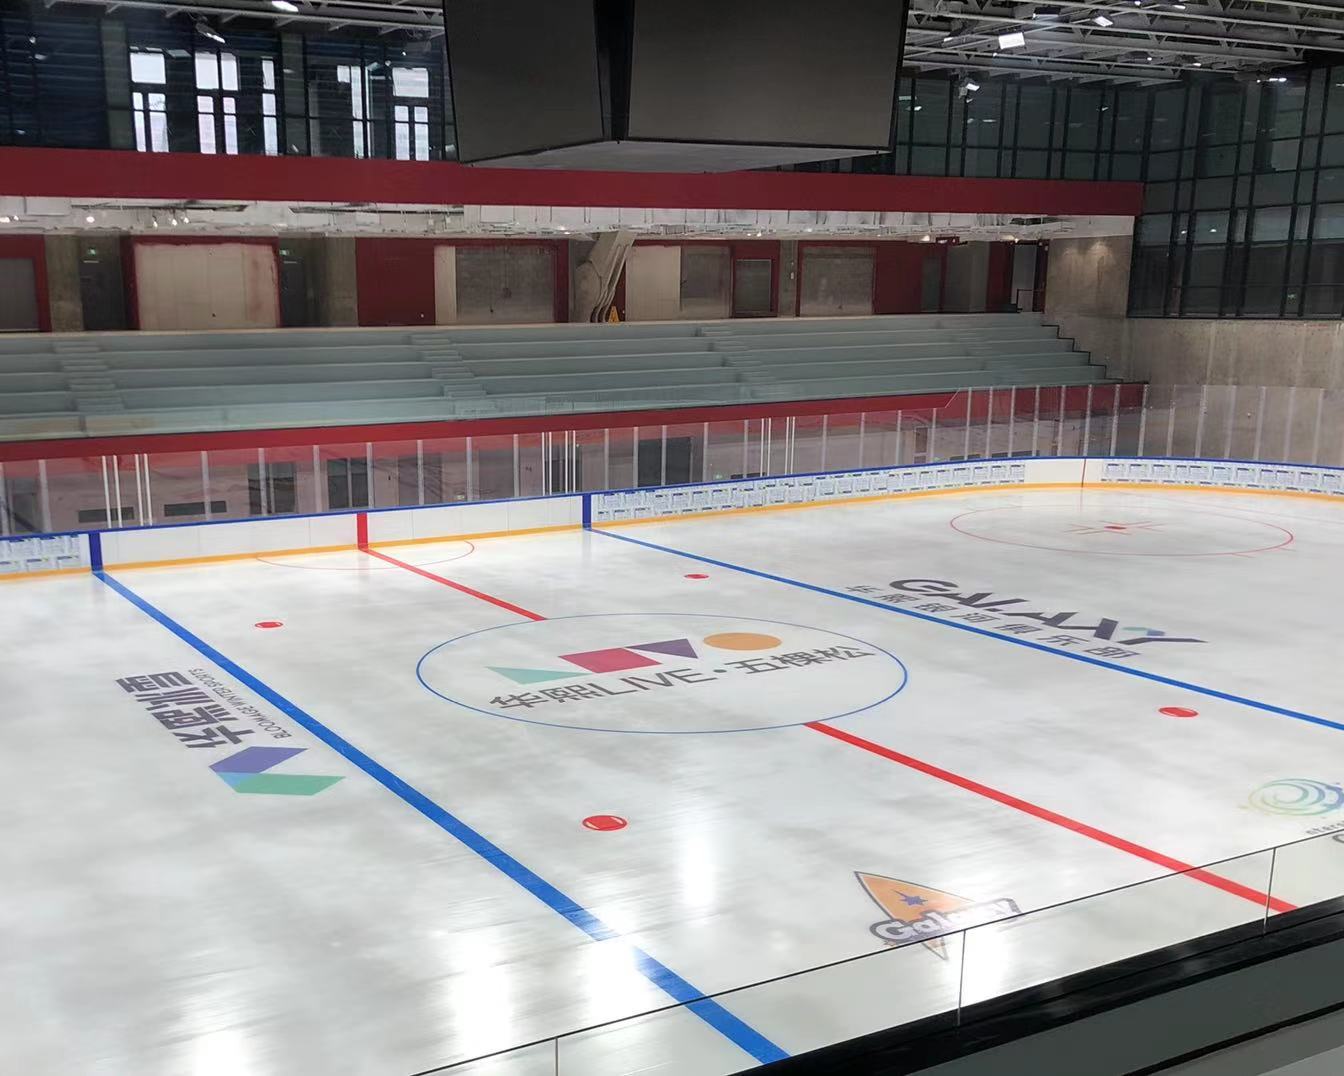 冬奥冰球训练馆通过制冰验收五棵松冰上运动中心已具备运营条件